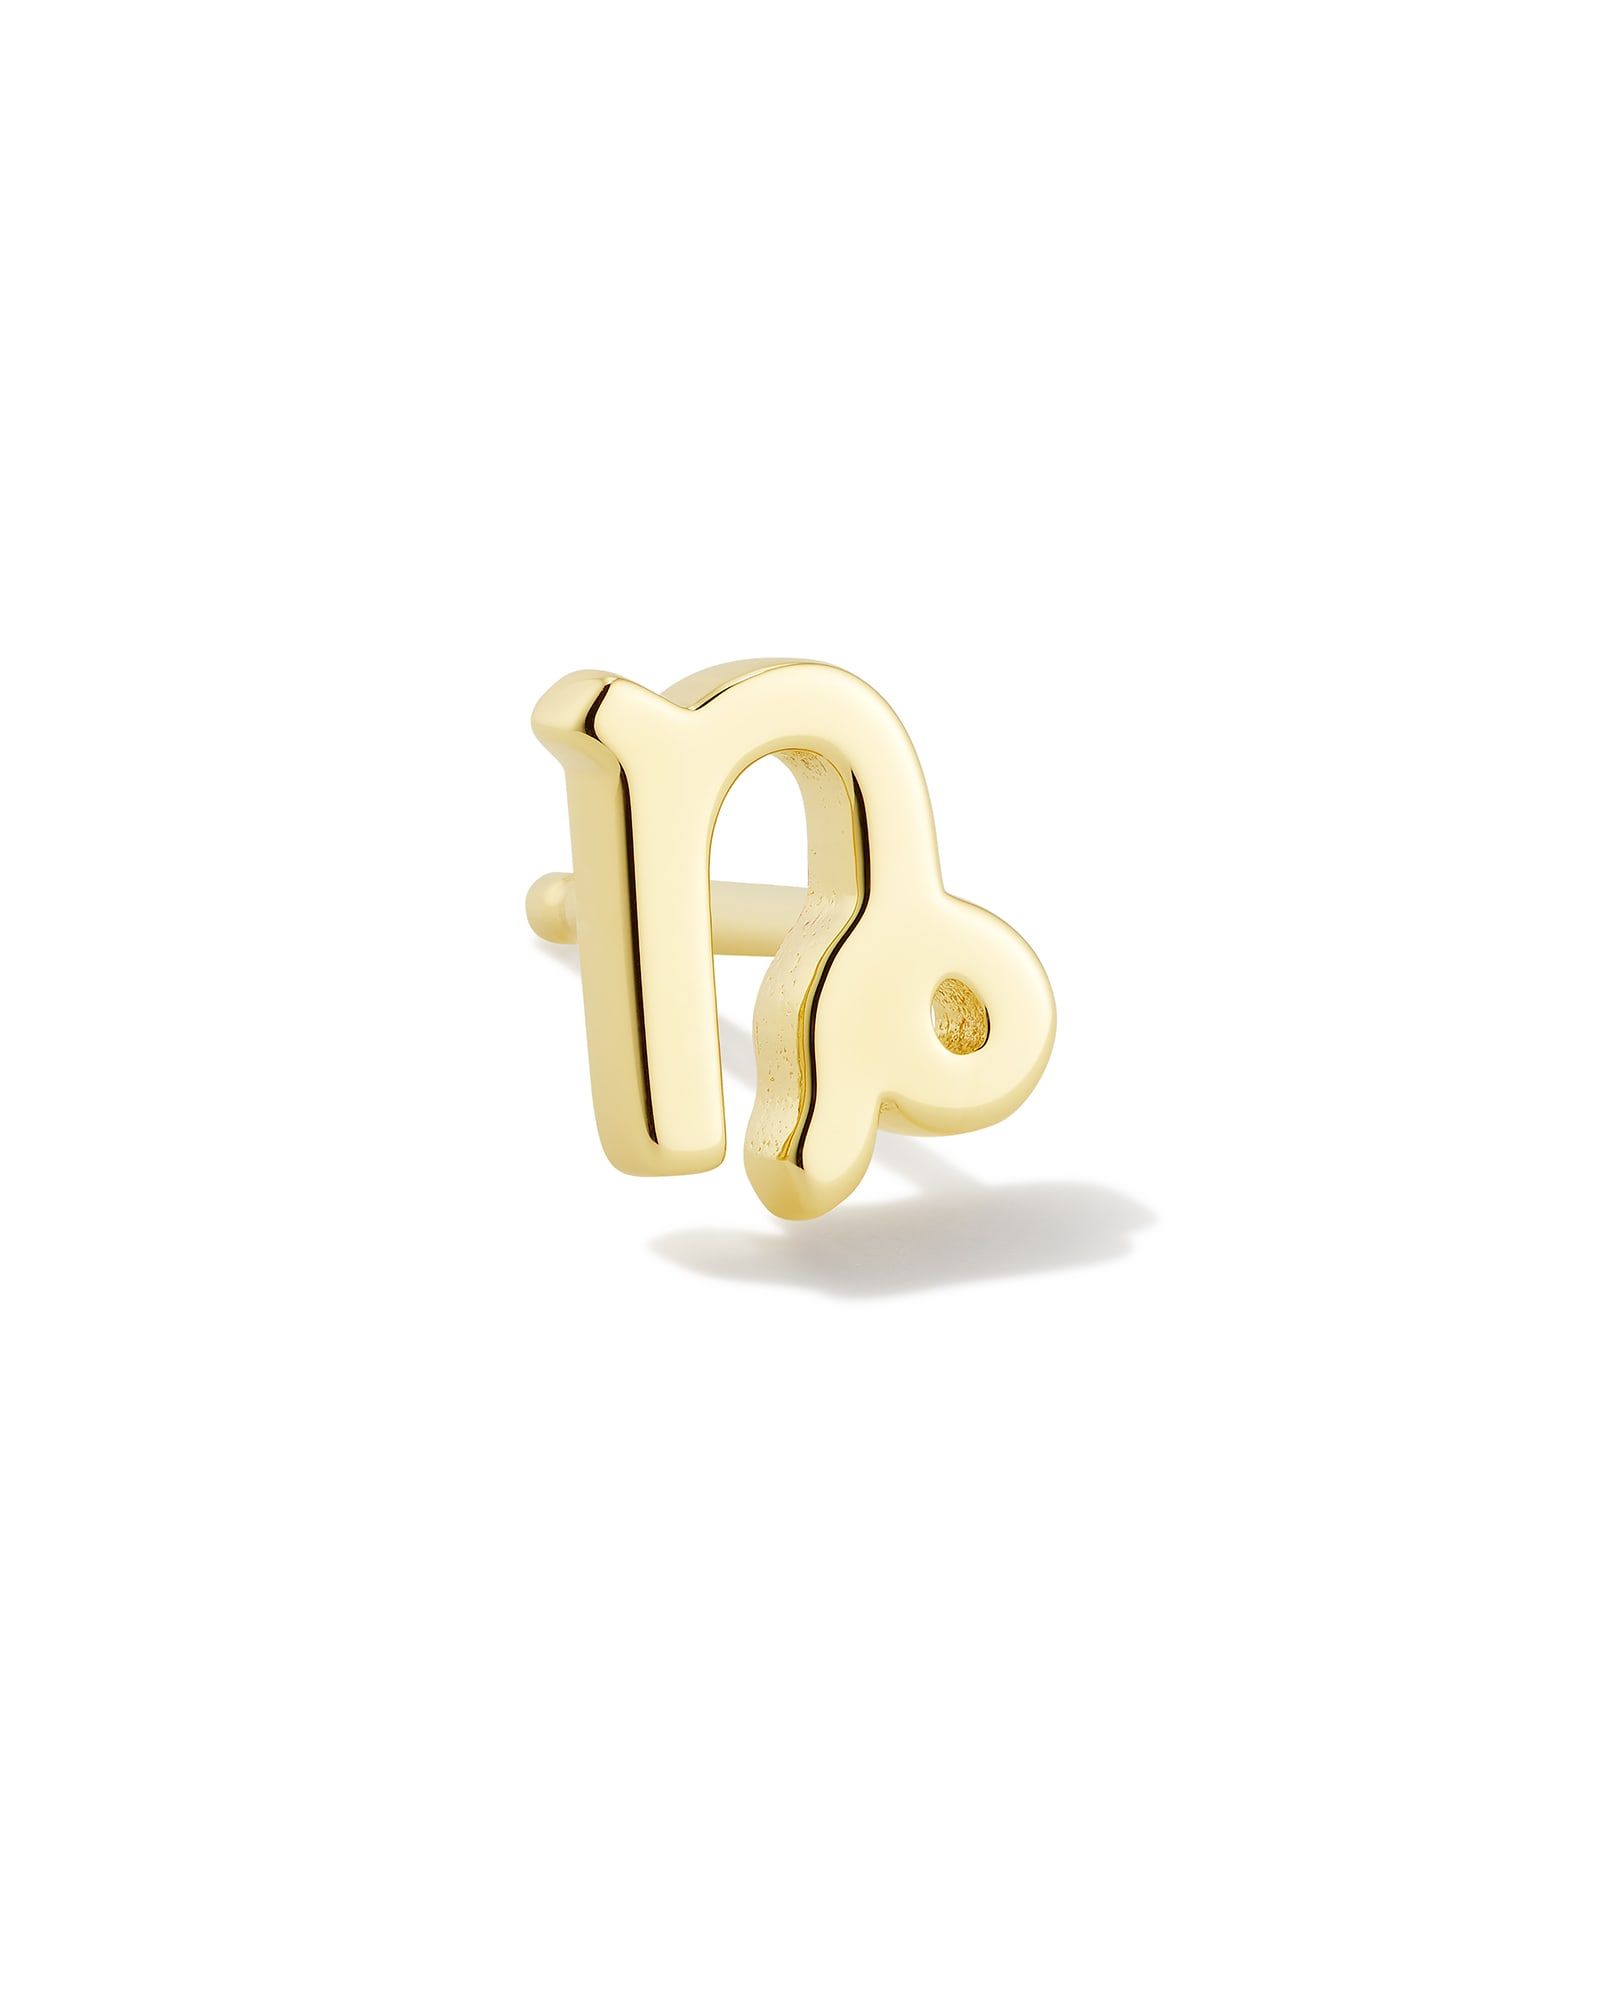 Capricorn Single Stud Earring in 18k Gold Vermeil